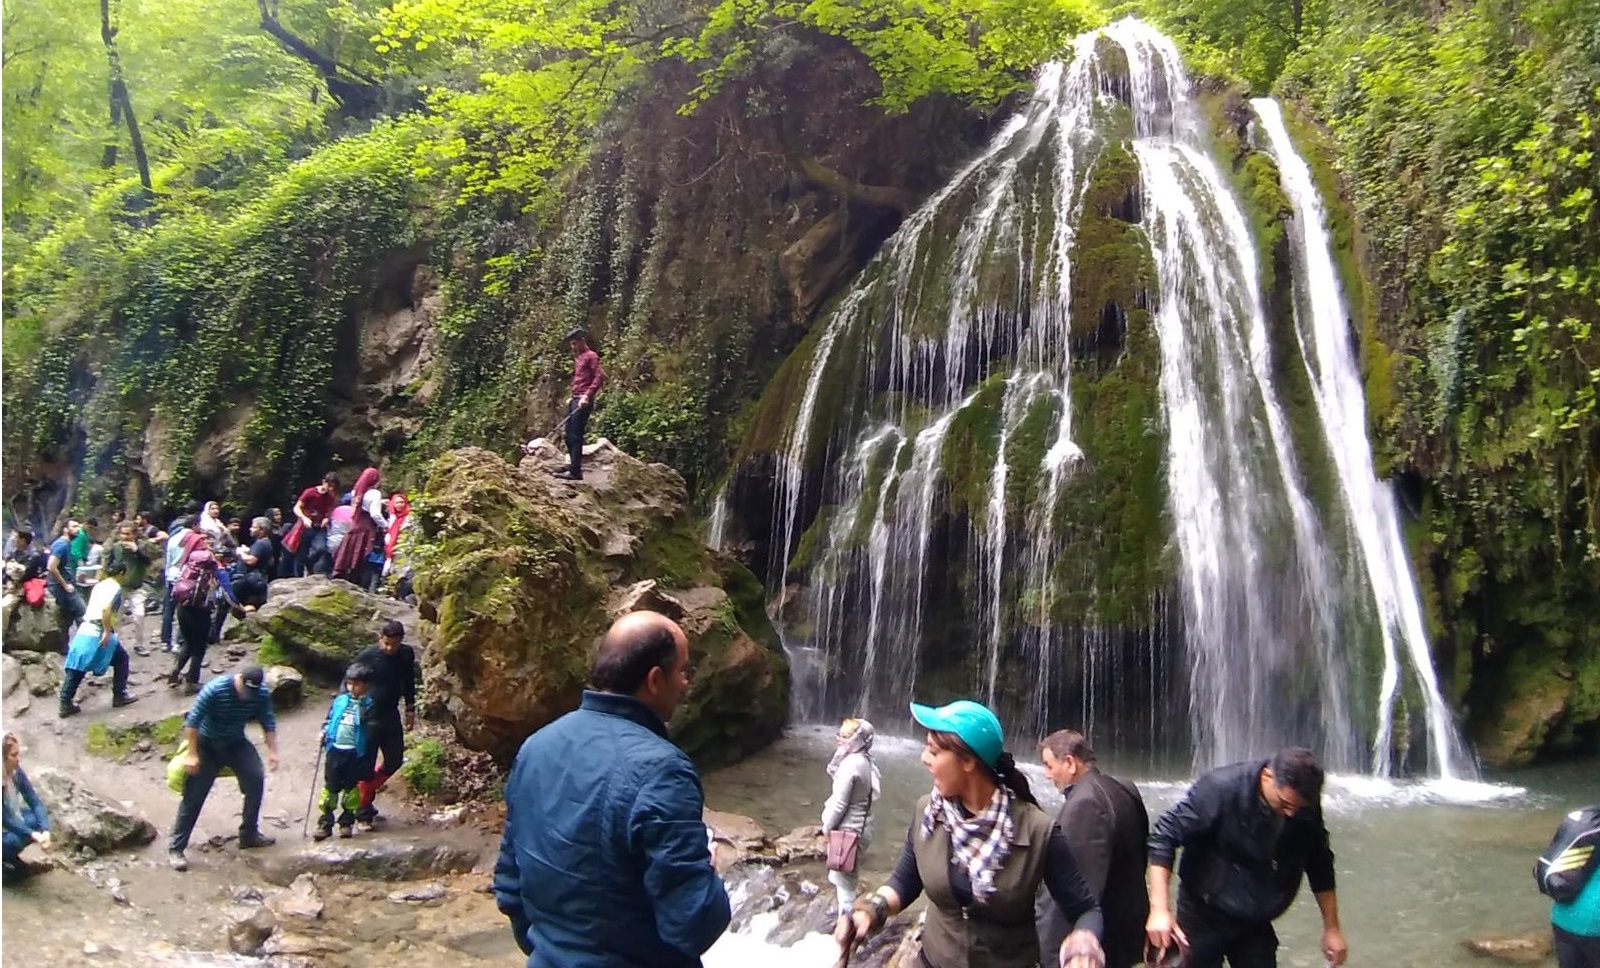 آبشار کبودوال علی آباد کتول استان گلستان